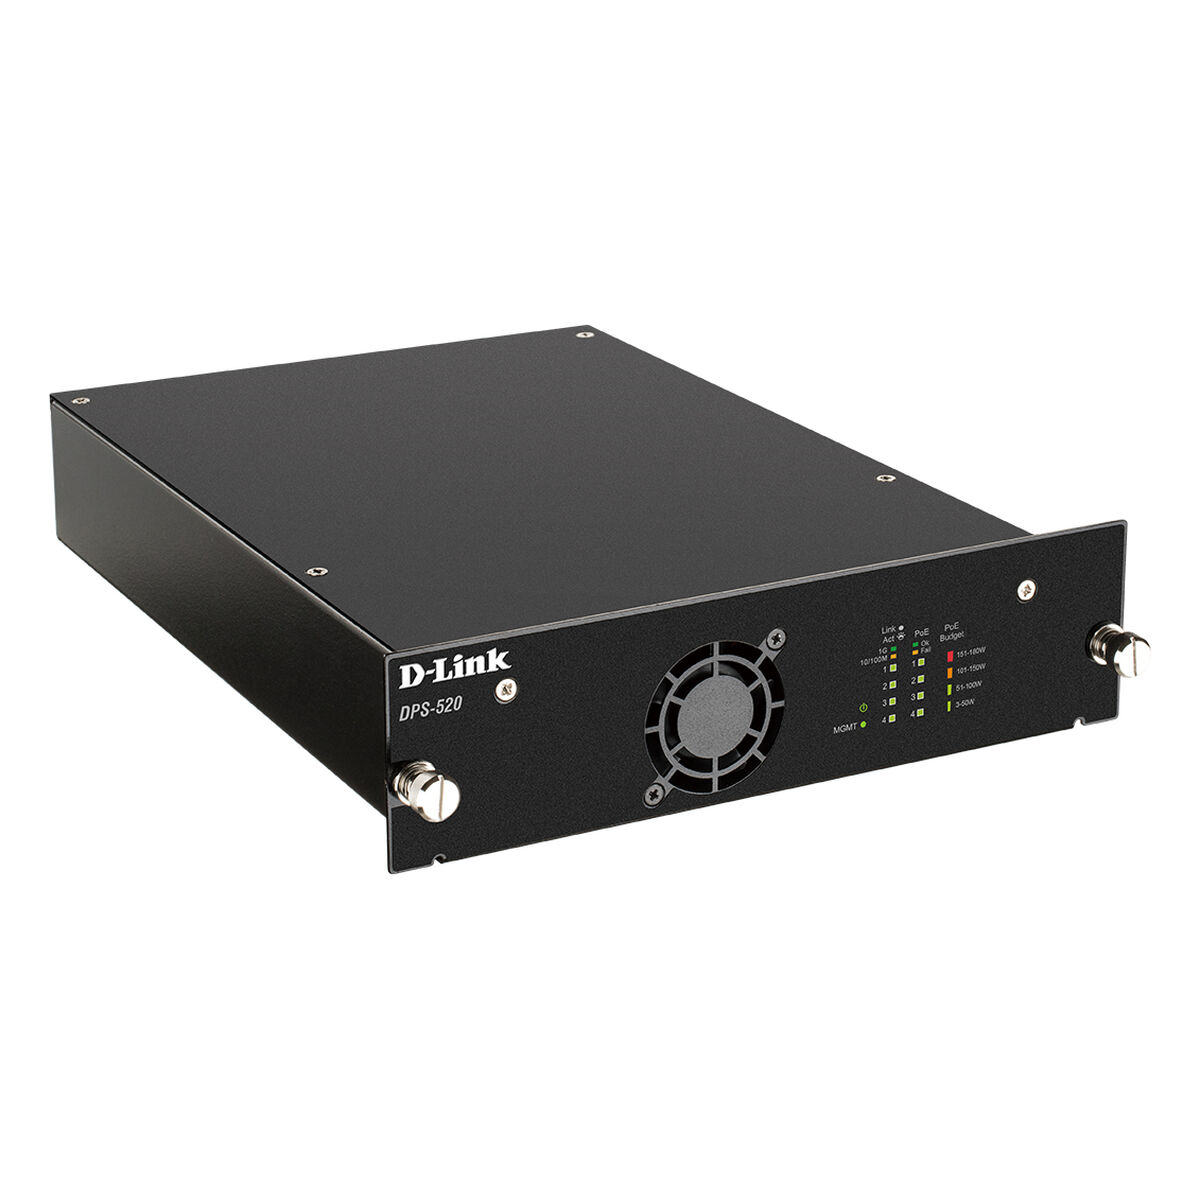 D-LINK DPS-520 ext. redundantes Netzteil 180 Netzteil Watt